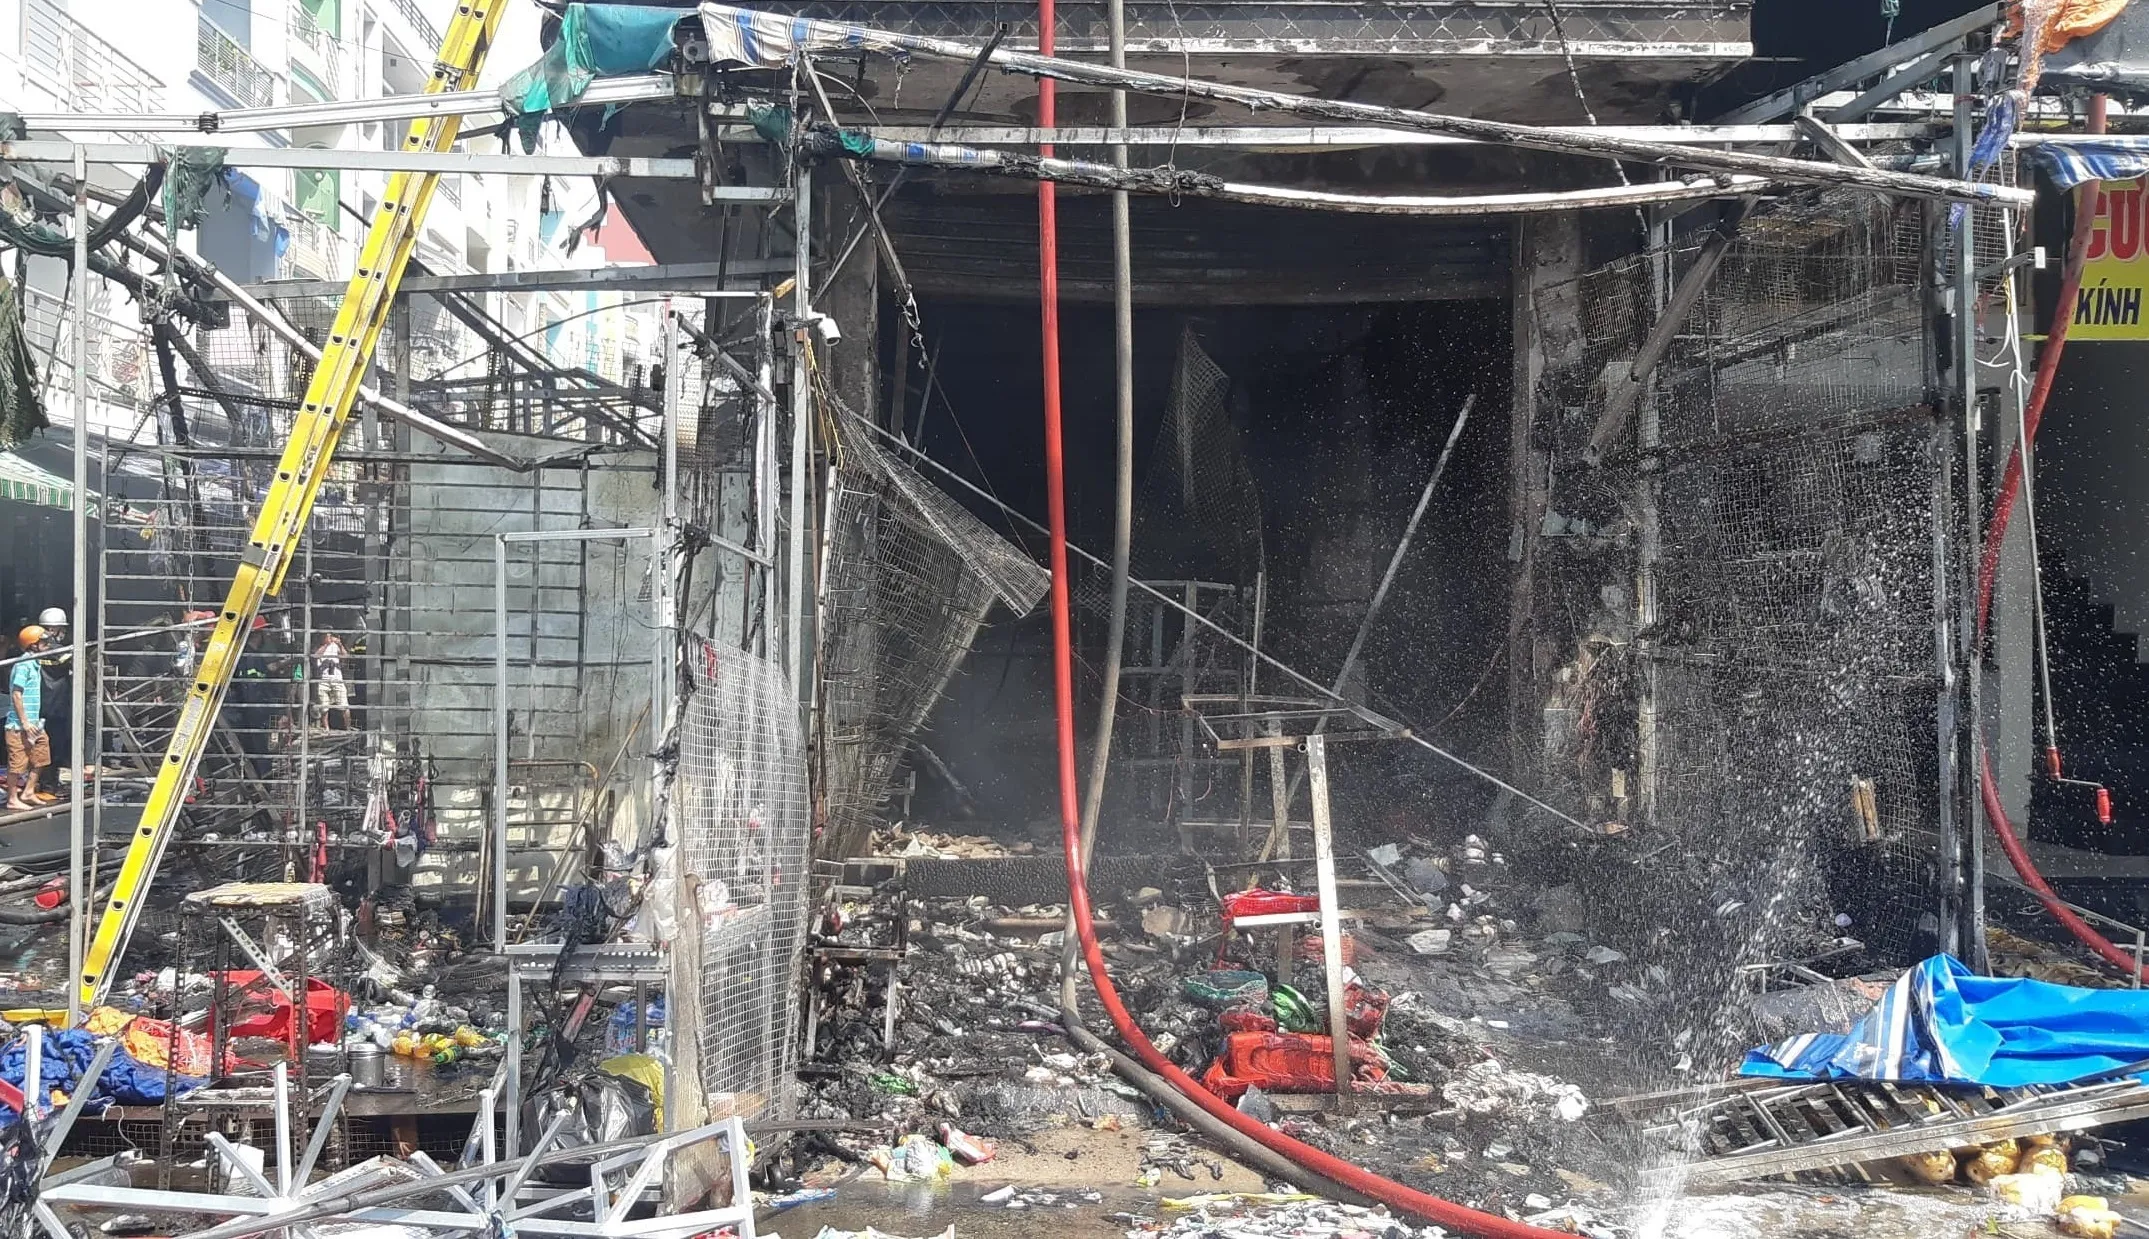 Cháy lớn cửa hàng kinh doanh tại chợ Hạnh Thông Tây, Gò Vấp 